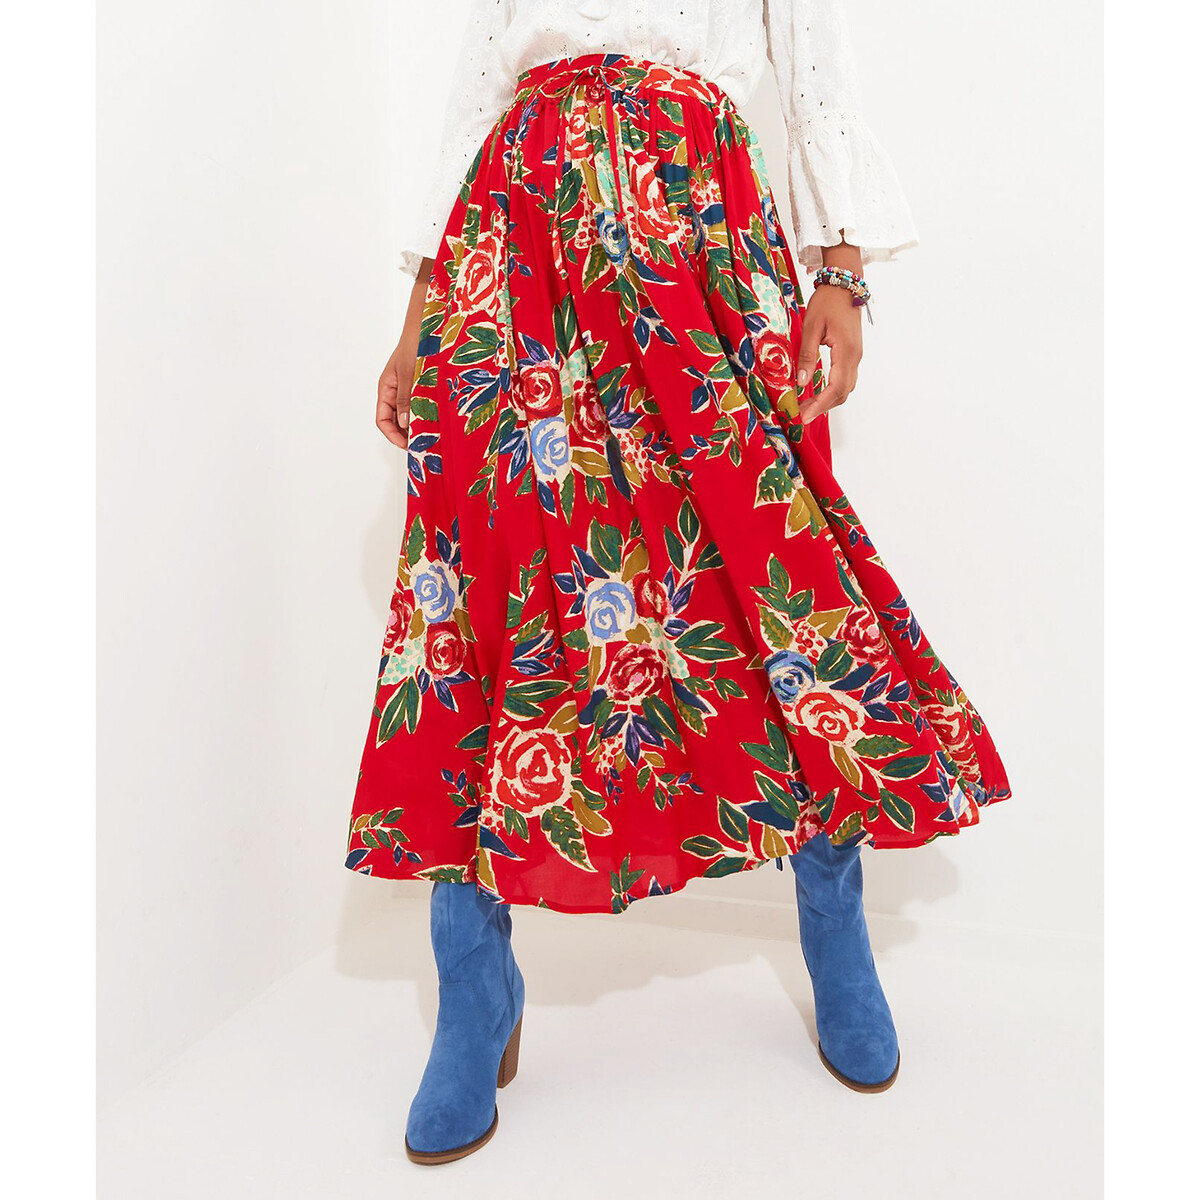 Юбка длинная с цветочным рисунком 40 (FR) - 46 (RUS) красный юбка короткая с цветочным принтом 40 fr 46 rus черный